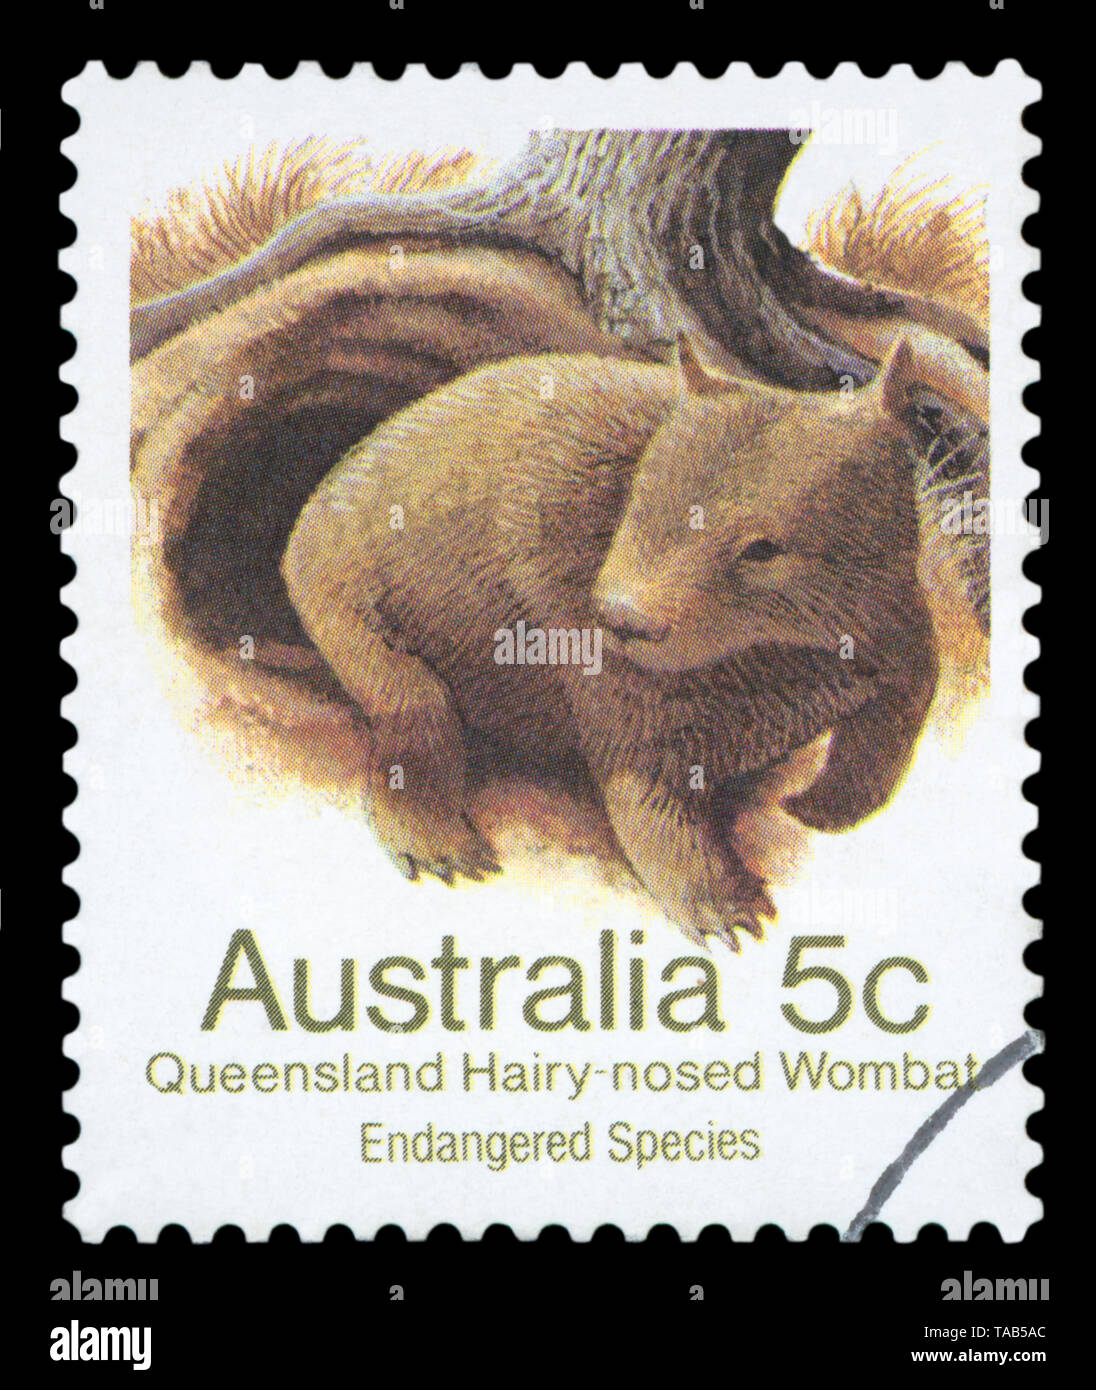 Australien - ca. 1981: Stempel im Australien gedruckten zeigt Queensland Behaarte-gerochene Wombat, lasiorhinus Krefftii, Beuteltier Säugetier, circa 1981. Stockfoto